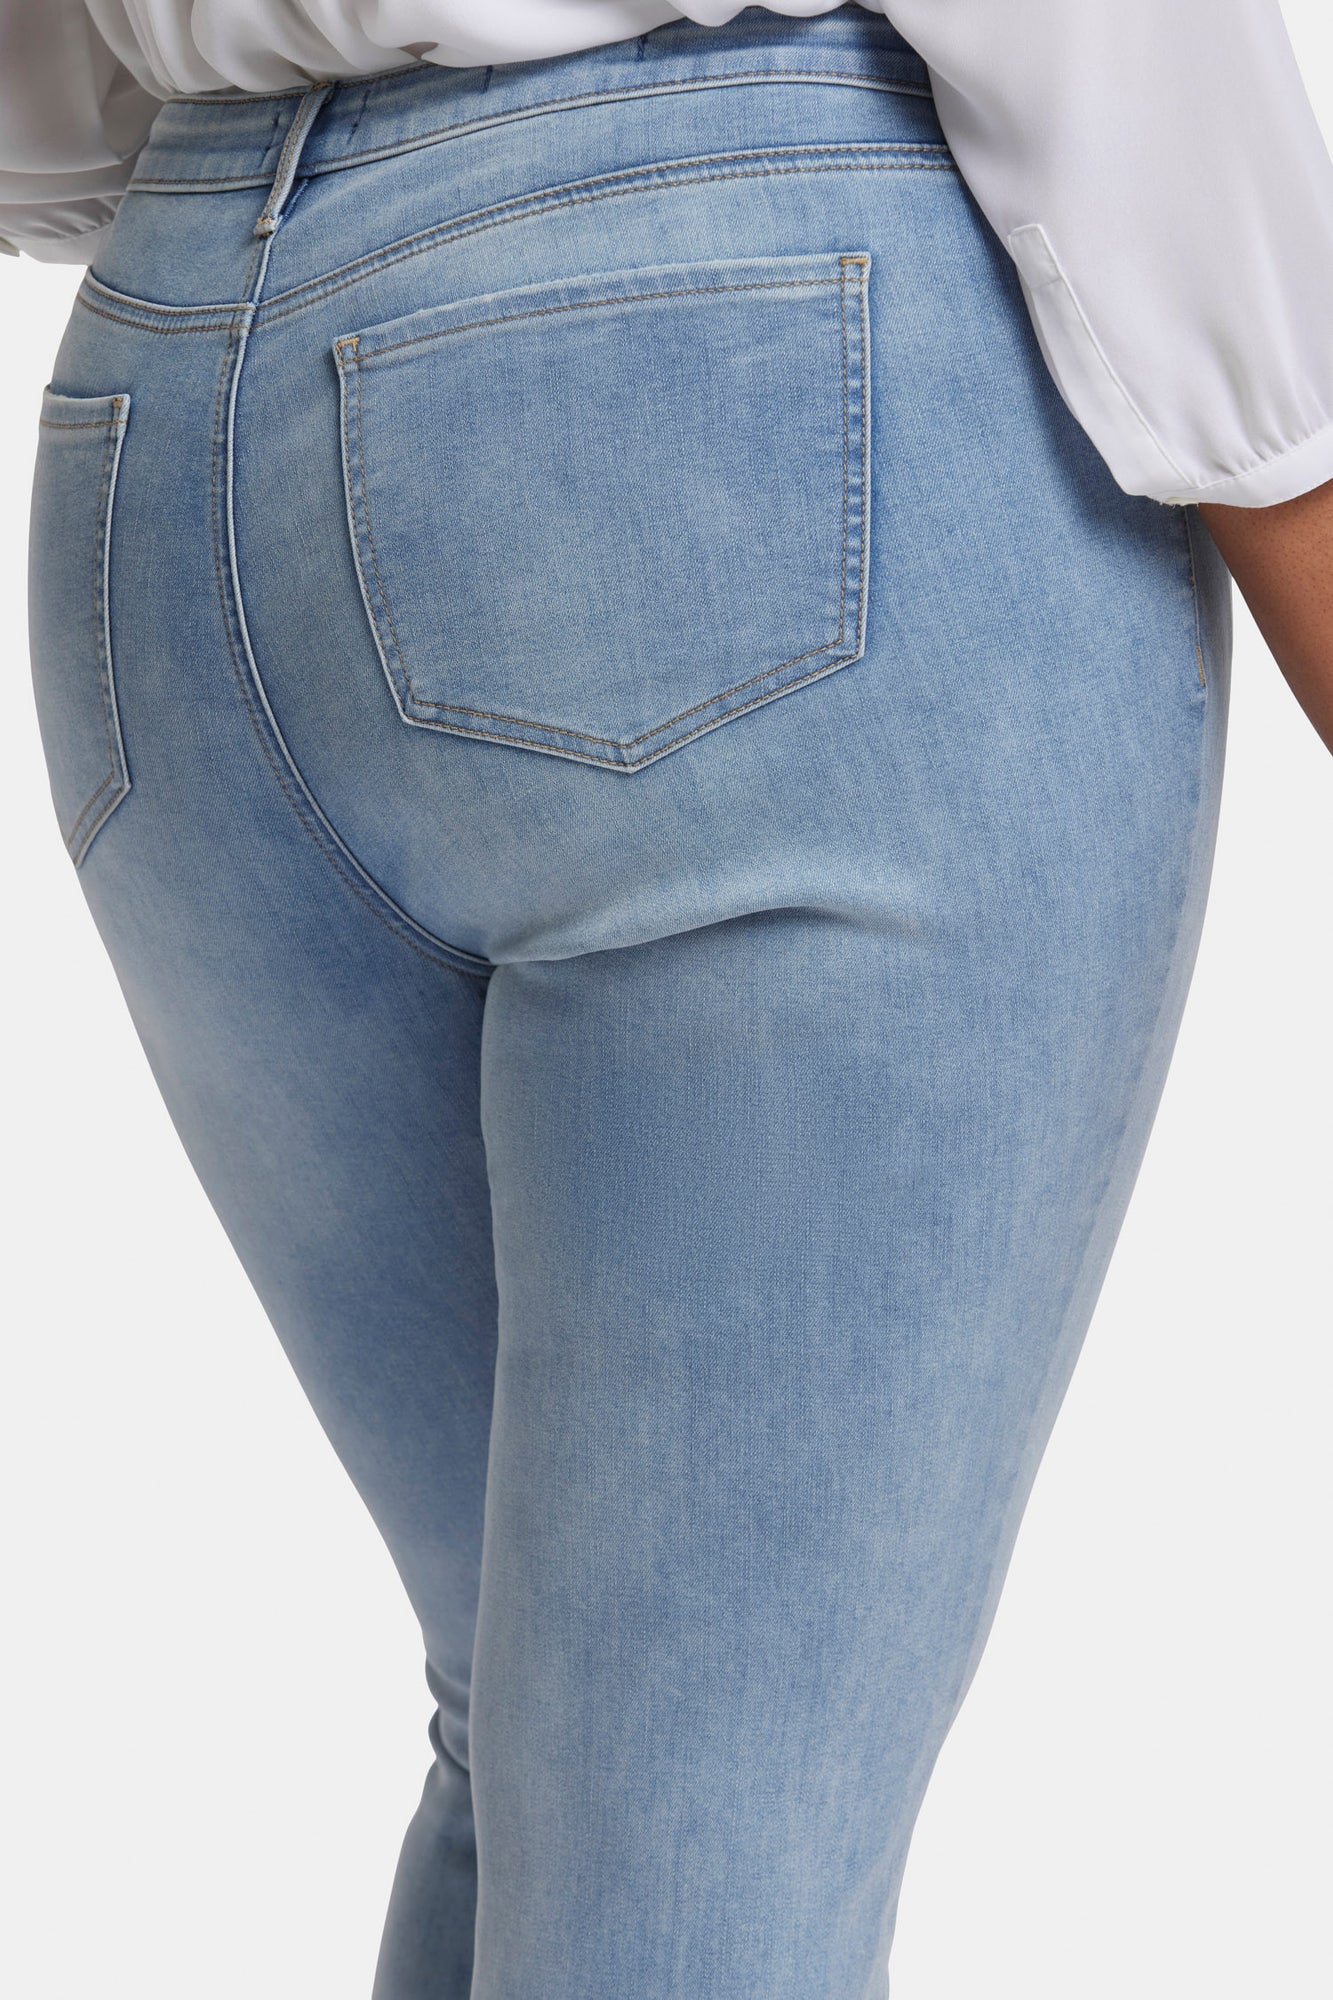 NYDJ Ami Skinny Jeans In Plus Size  - Biscayne